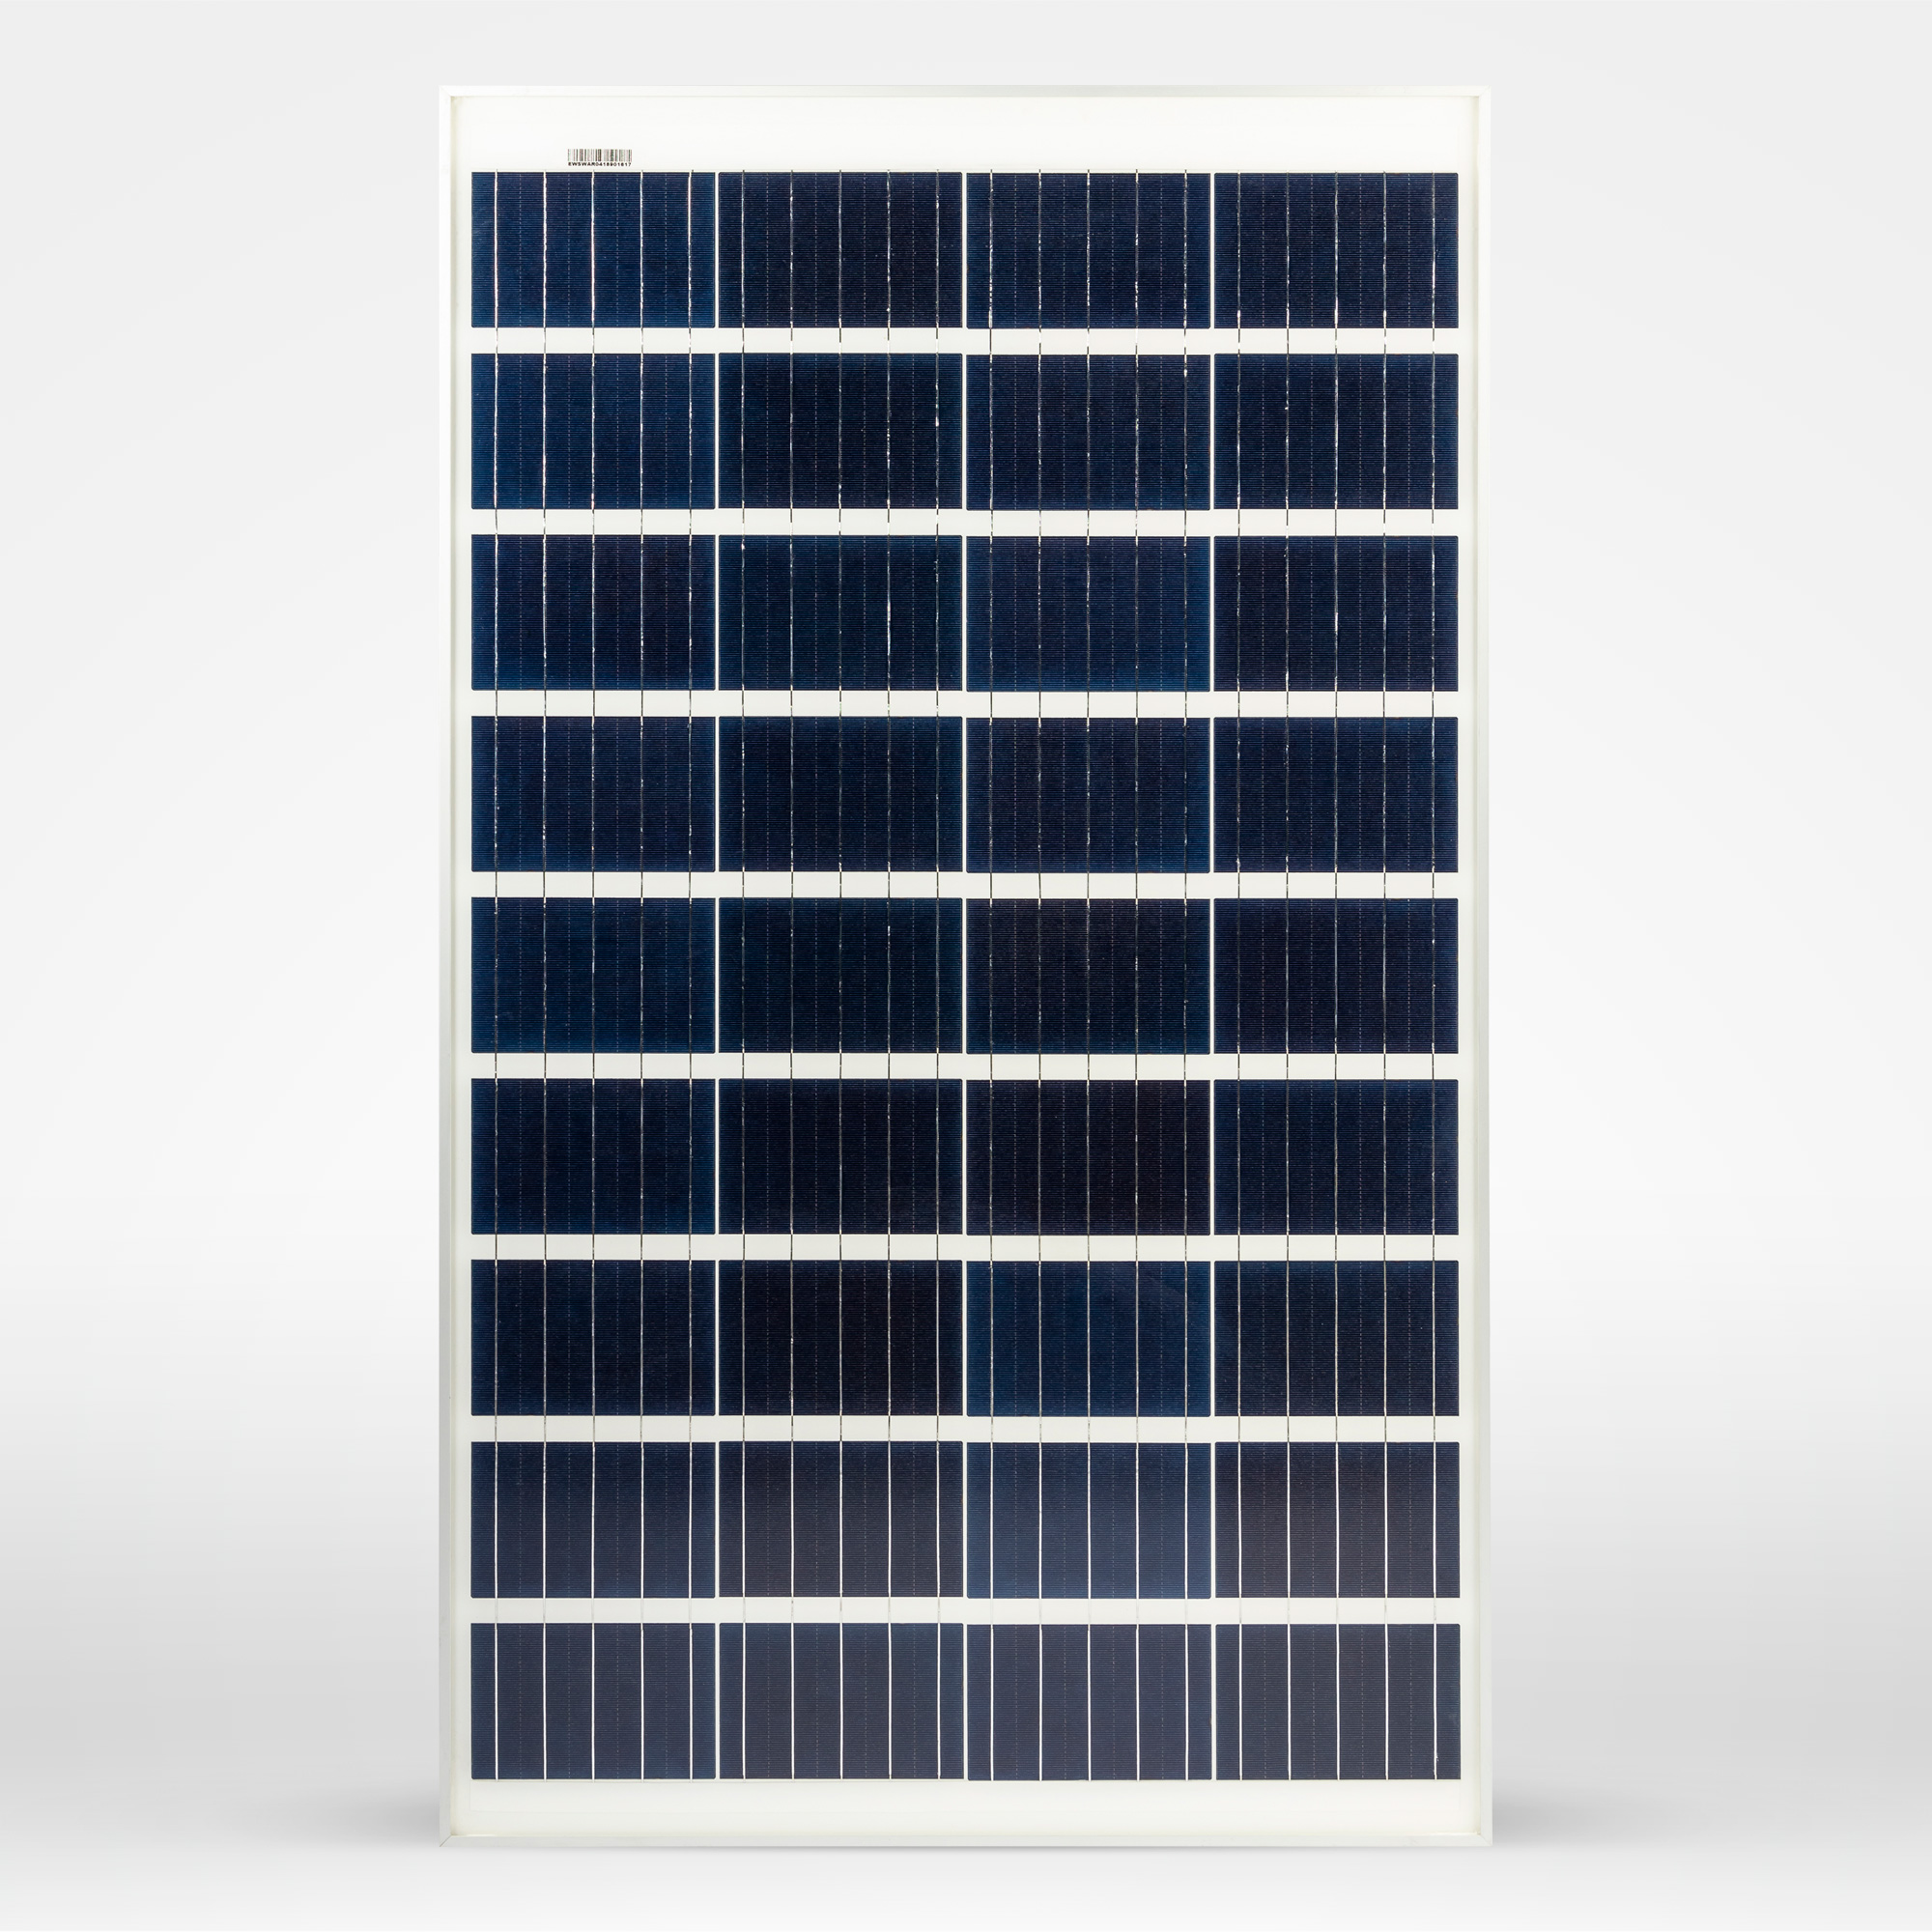 EWS-100P-36-I   Panneau solaire polycristallin 12V 100W